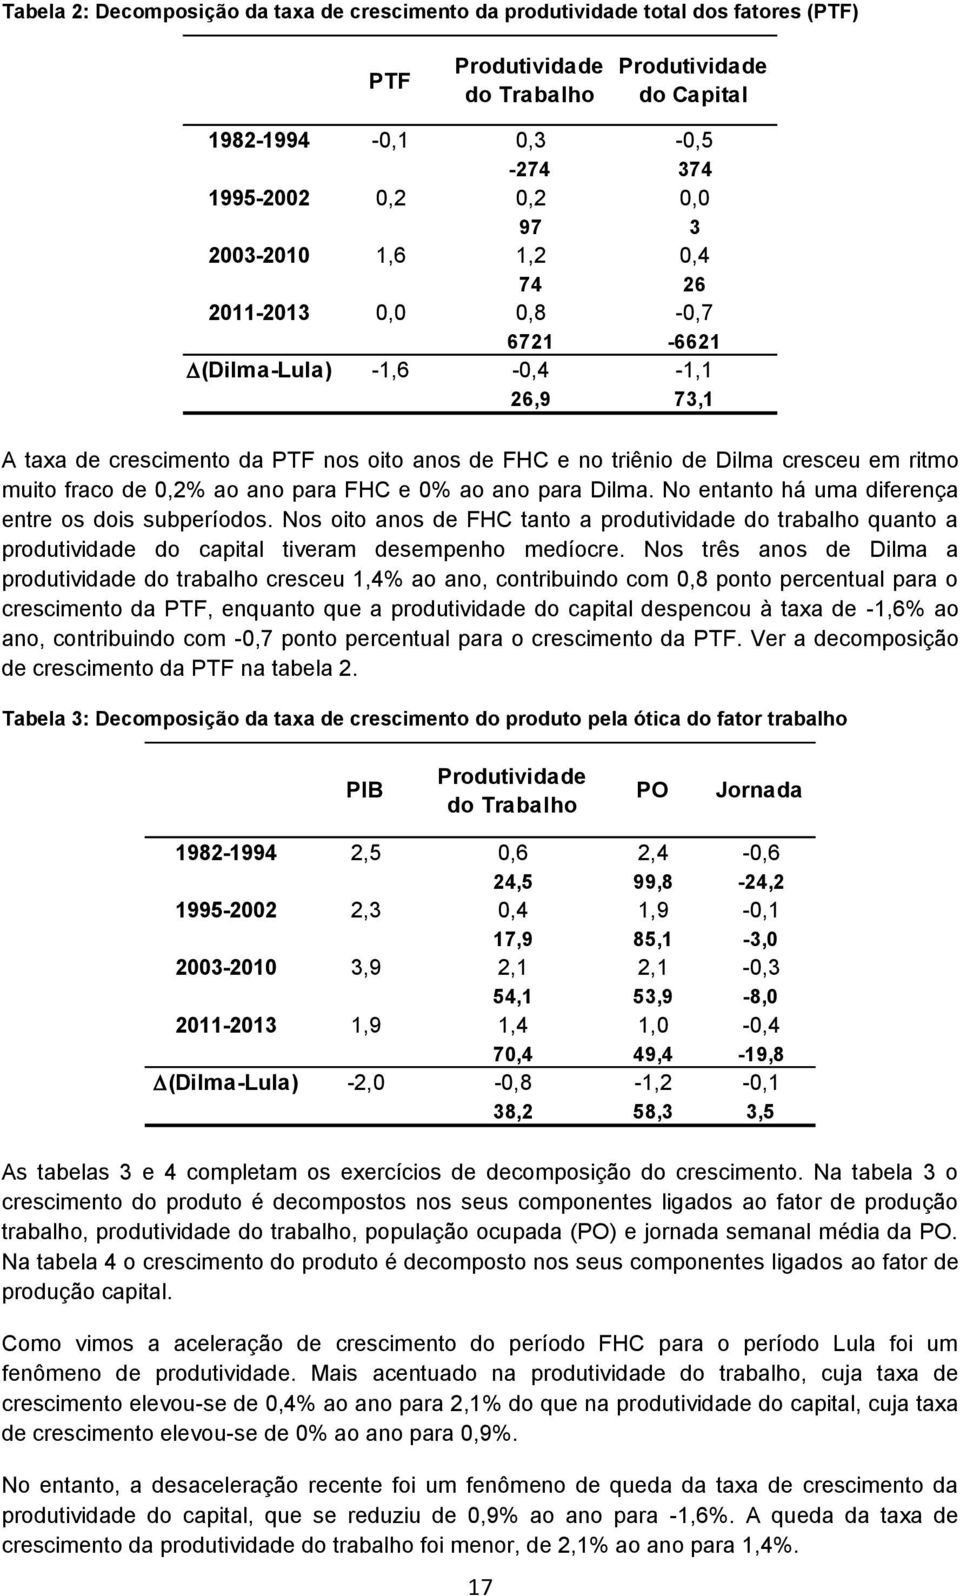 de 0,2% ao ano para FHC e 0% ao ano para Dilma. No entanto há uma diferença entre os dois subperíodos.